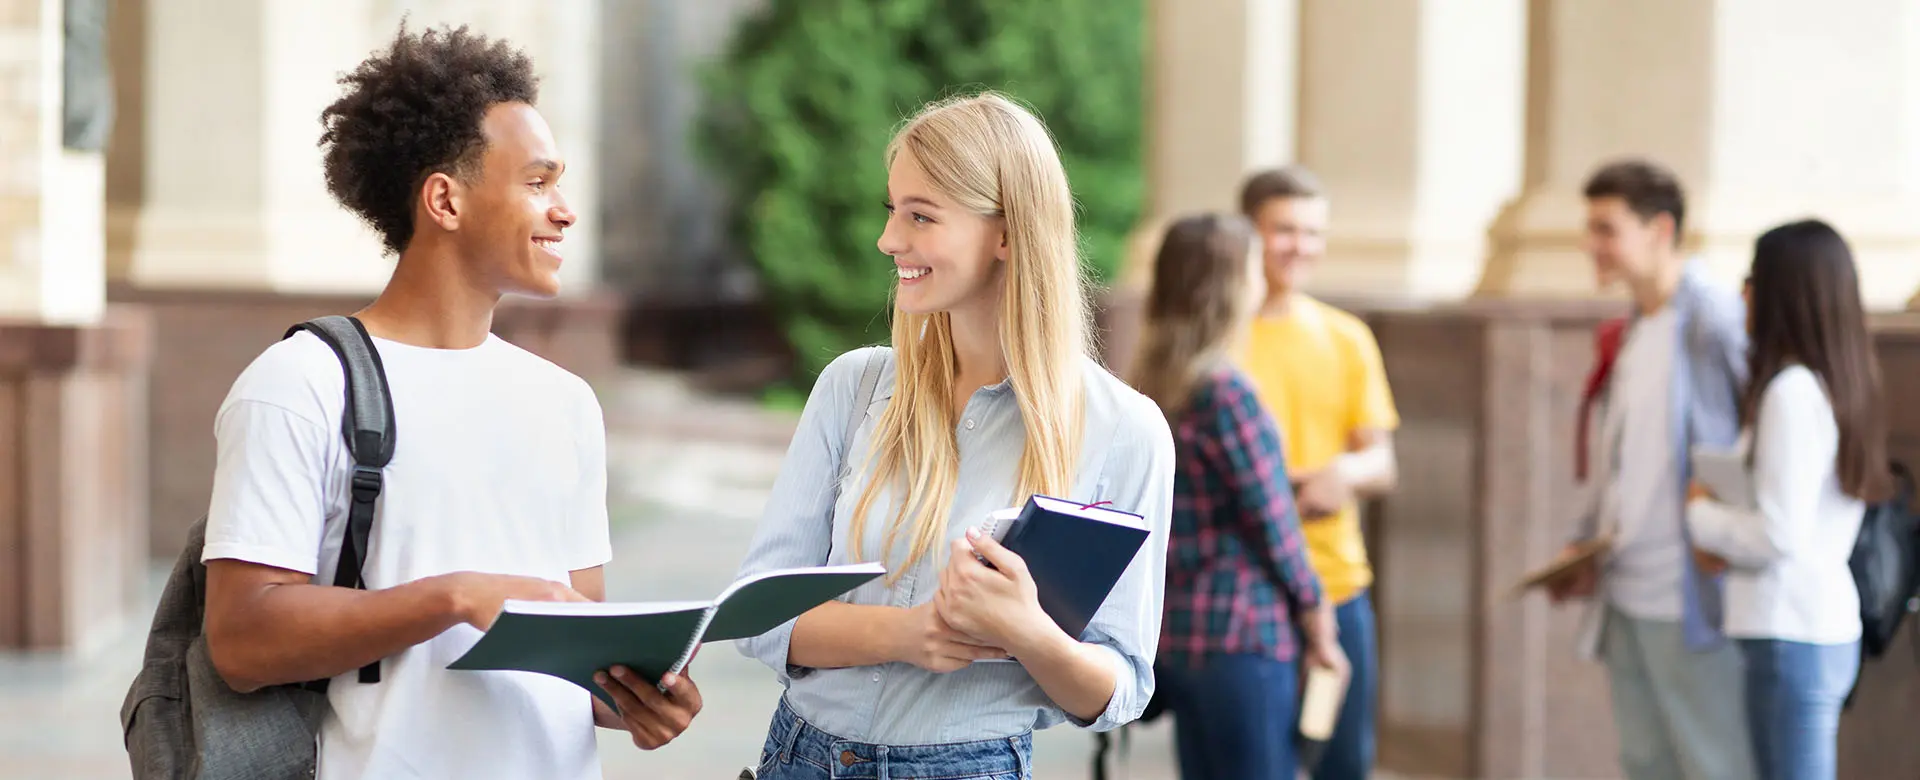 Zwei lächelnde Studierende mit Heften in den Händen unterhalten sich vor einer belebten Campus-Szene.